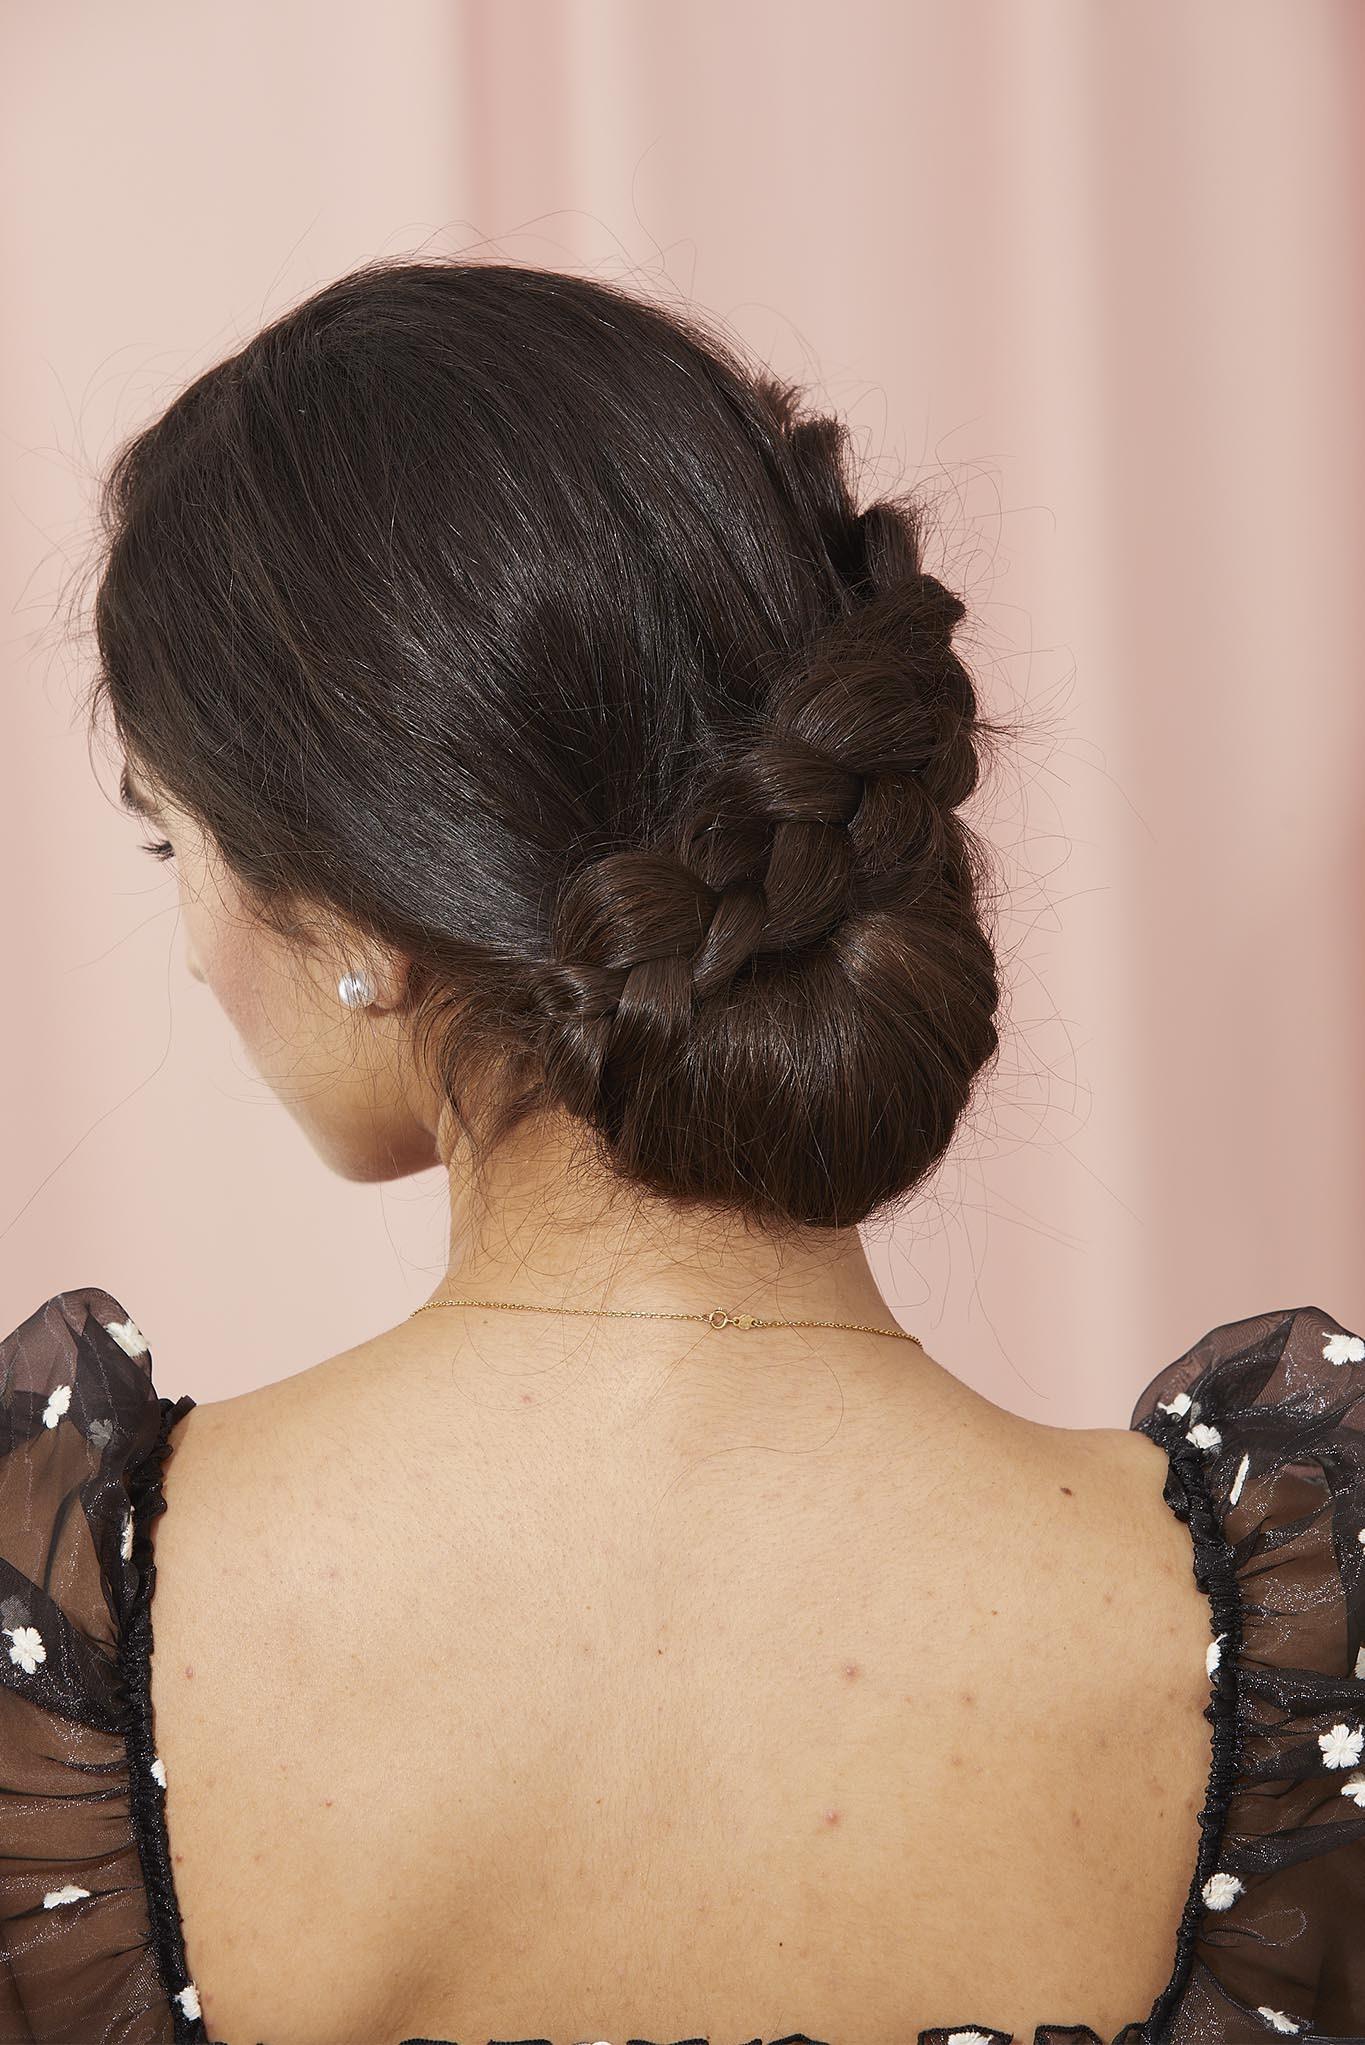 mujer de espaldas de pelo negro lacio con recogido bajo y trenza en línea oblicua, recogido peinados con trenzas